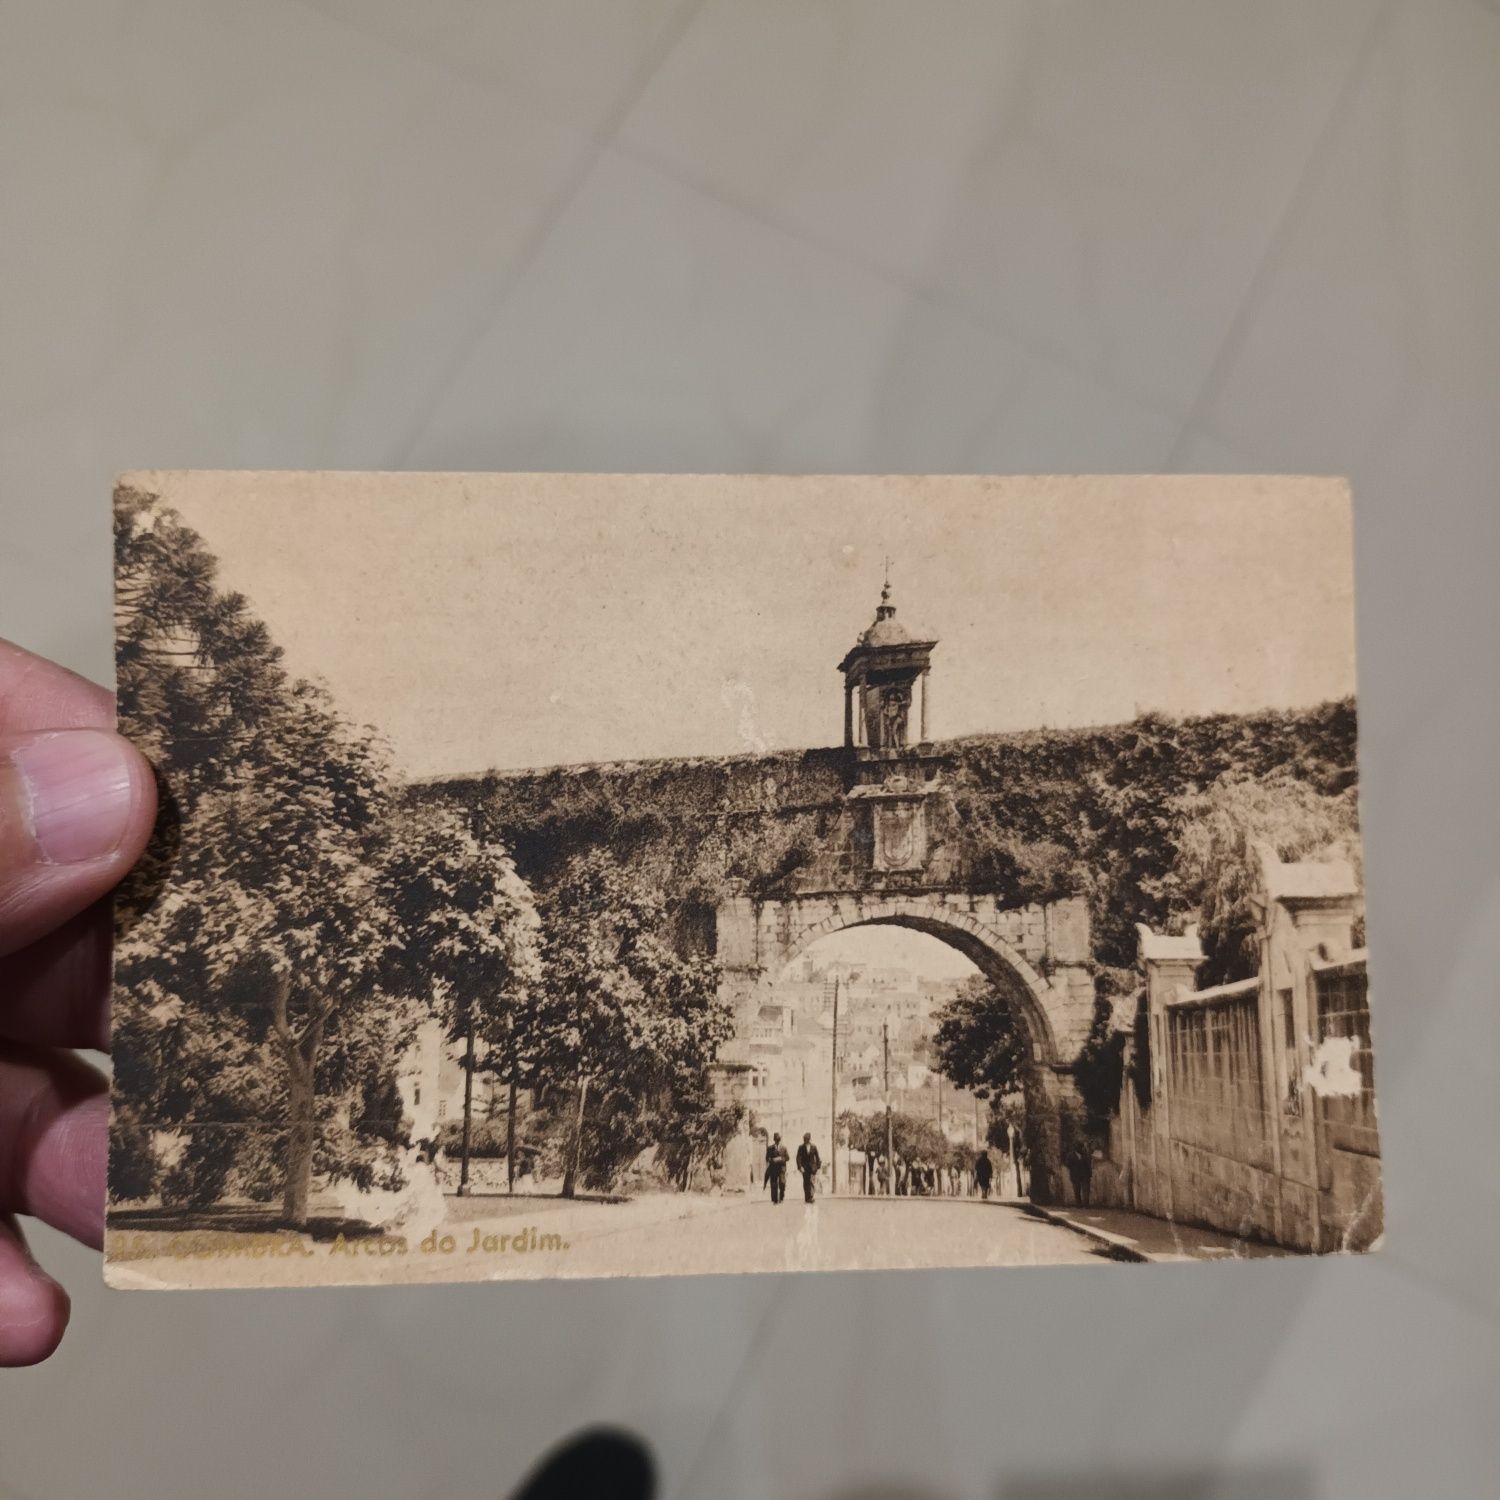 6 postais antigos preto e branco de Coimbra